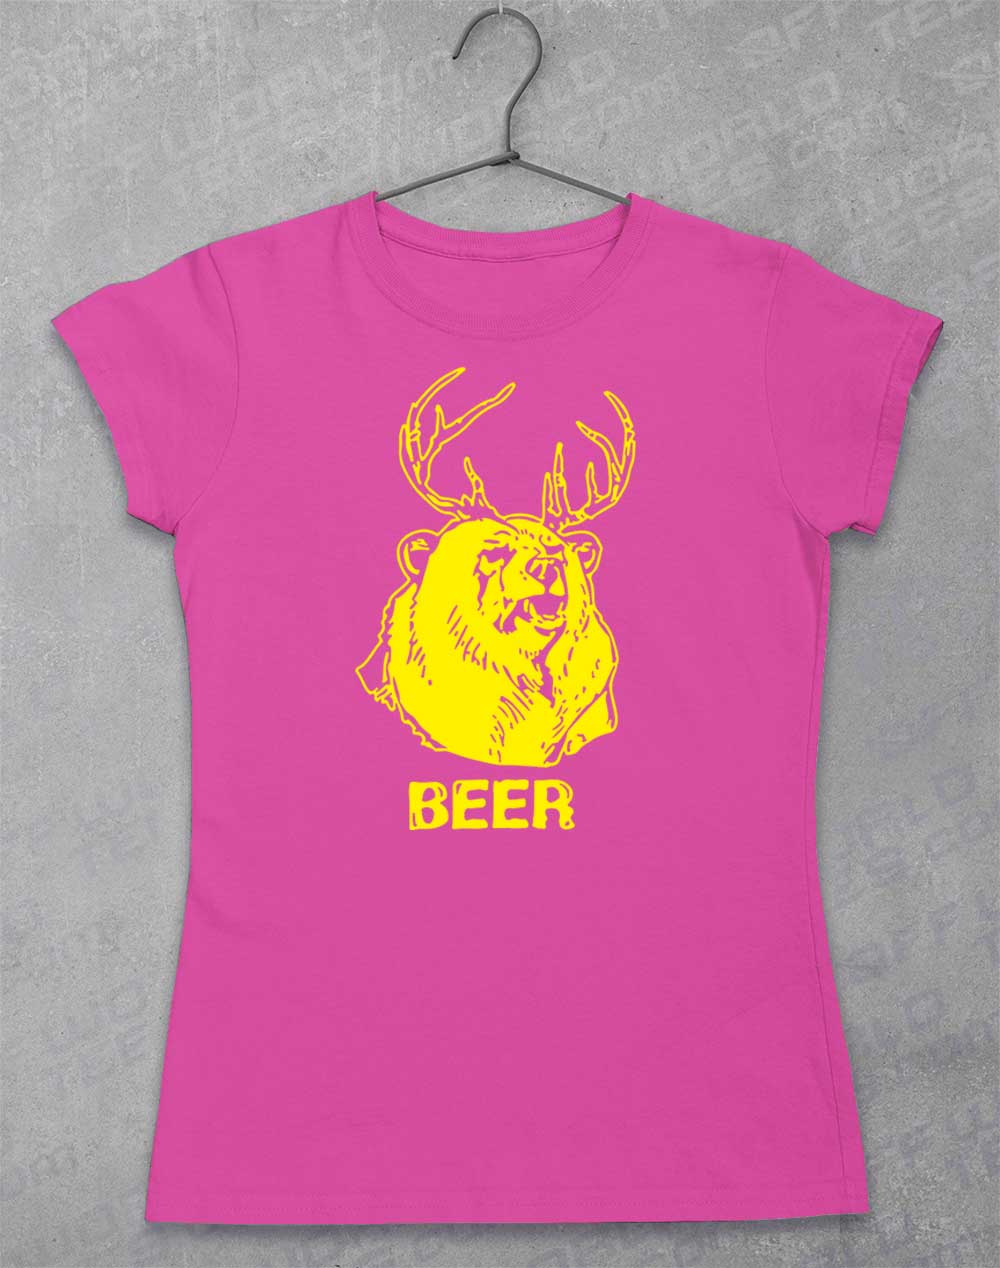 Azalea - Mac's Beer Women's T-Shirt